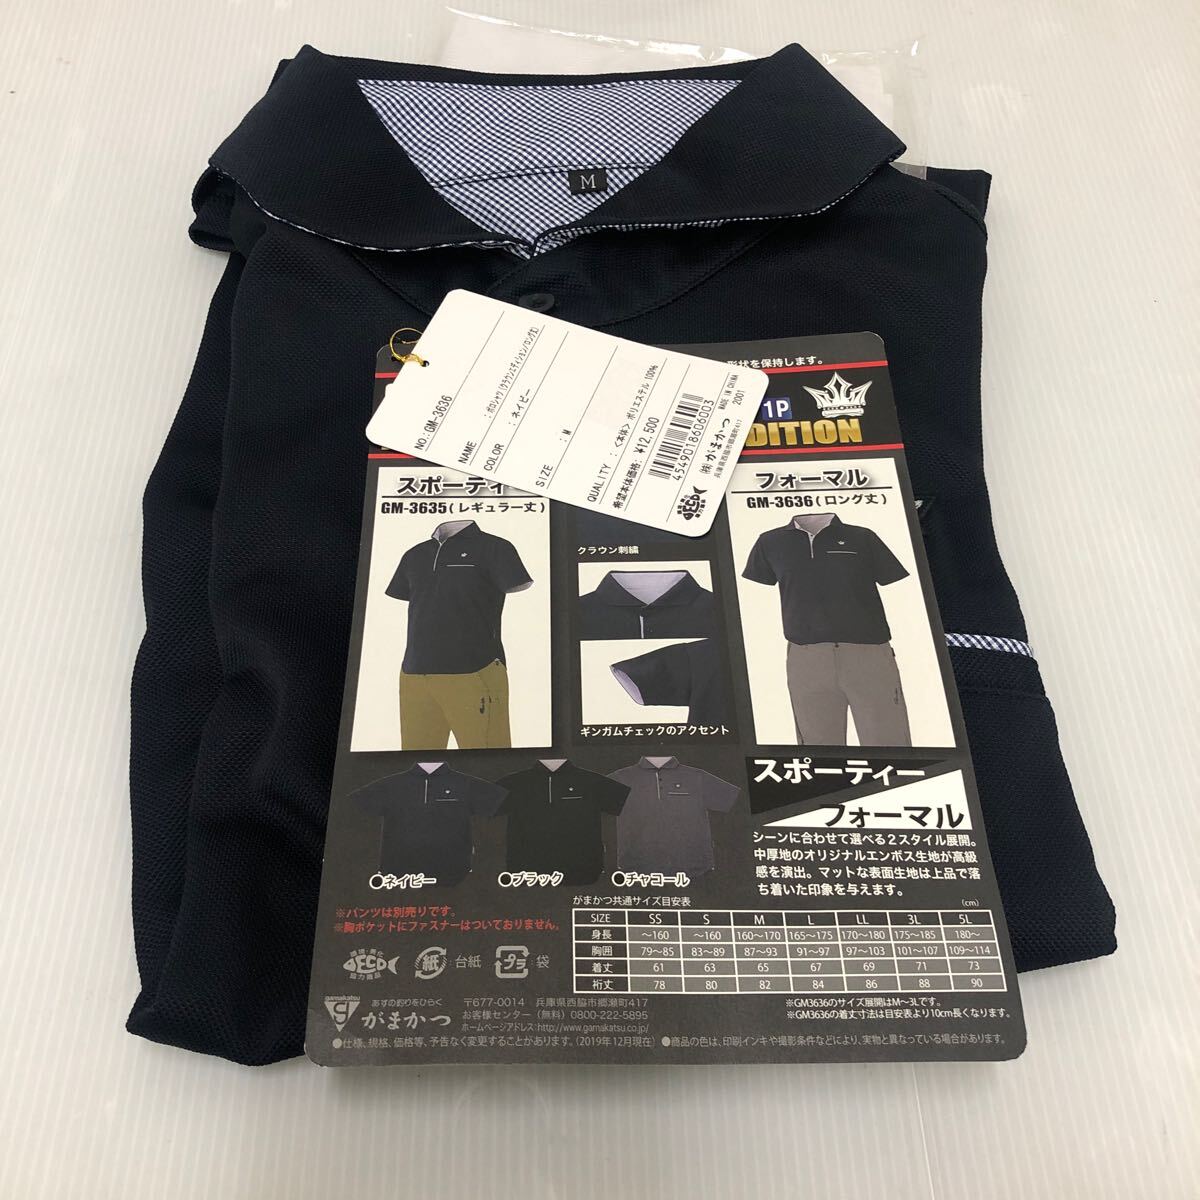  Gamakatsu рубашка-поло ( Crown выпуск длинный длина ) GM-3636 темно-синий M размер [ новый товар не использовался товар ]60 размер отправка 60460